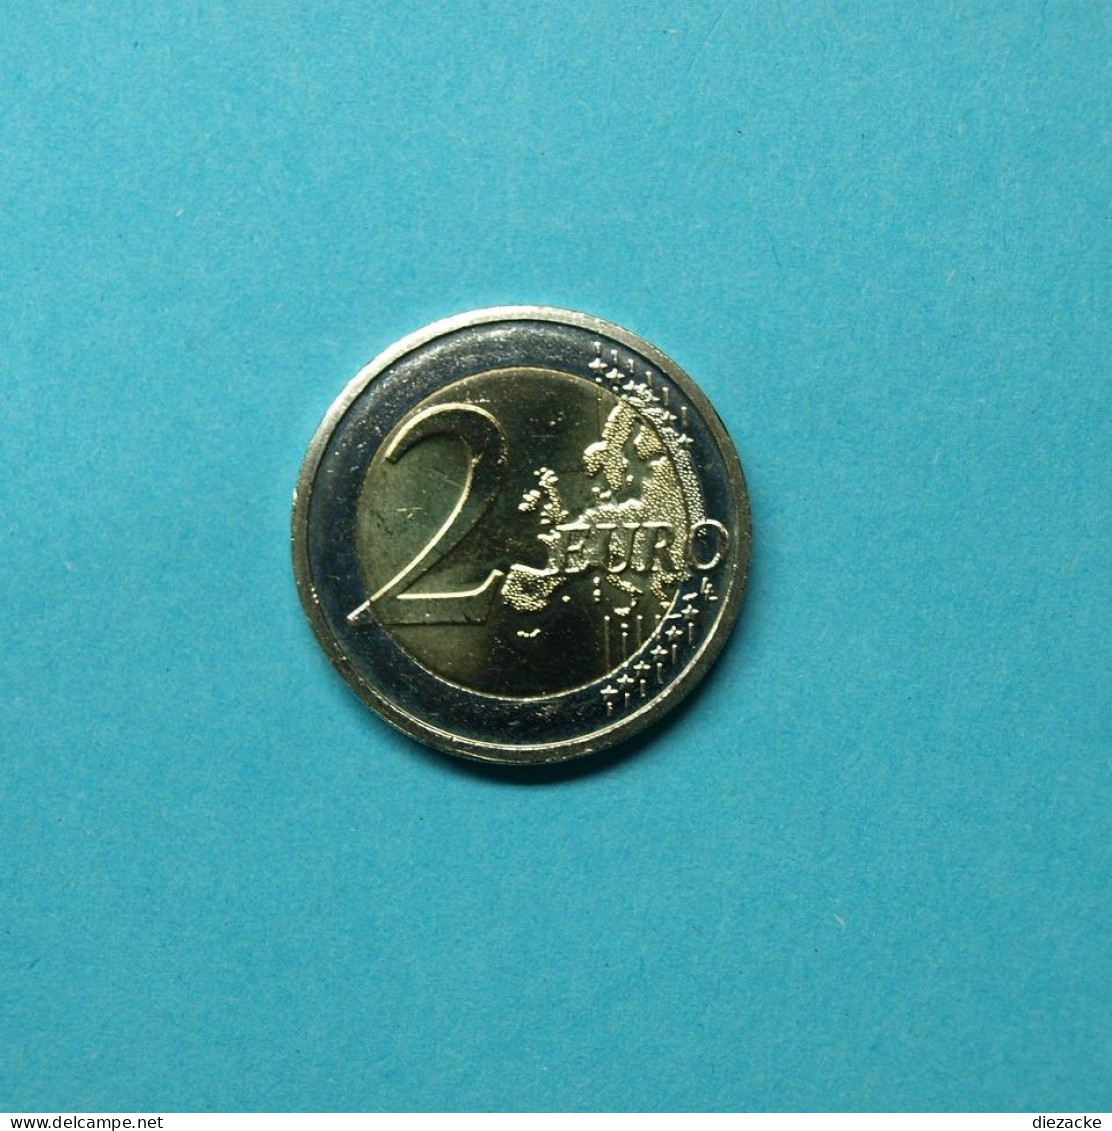 Irland 2012 2 Euro 10 Jahre Euro Bargeld Unzirkuliert (M4413 - Ireland